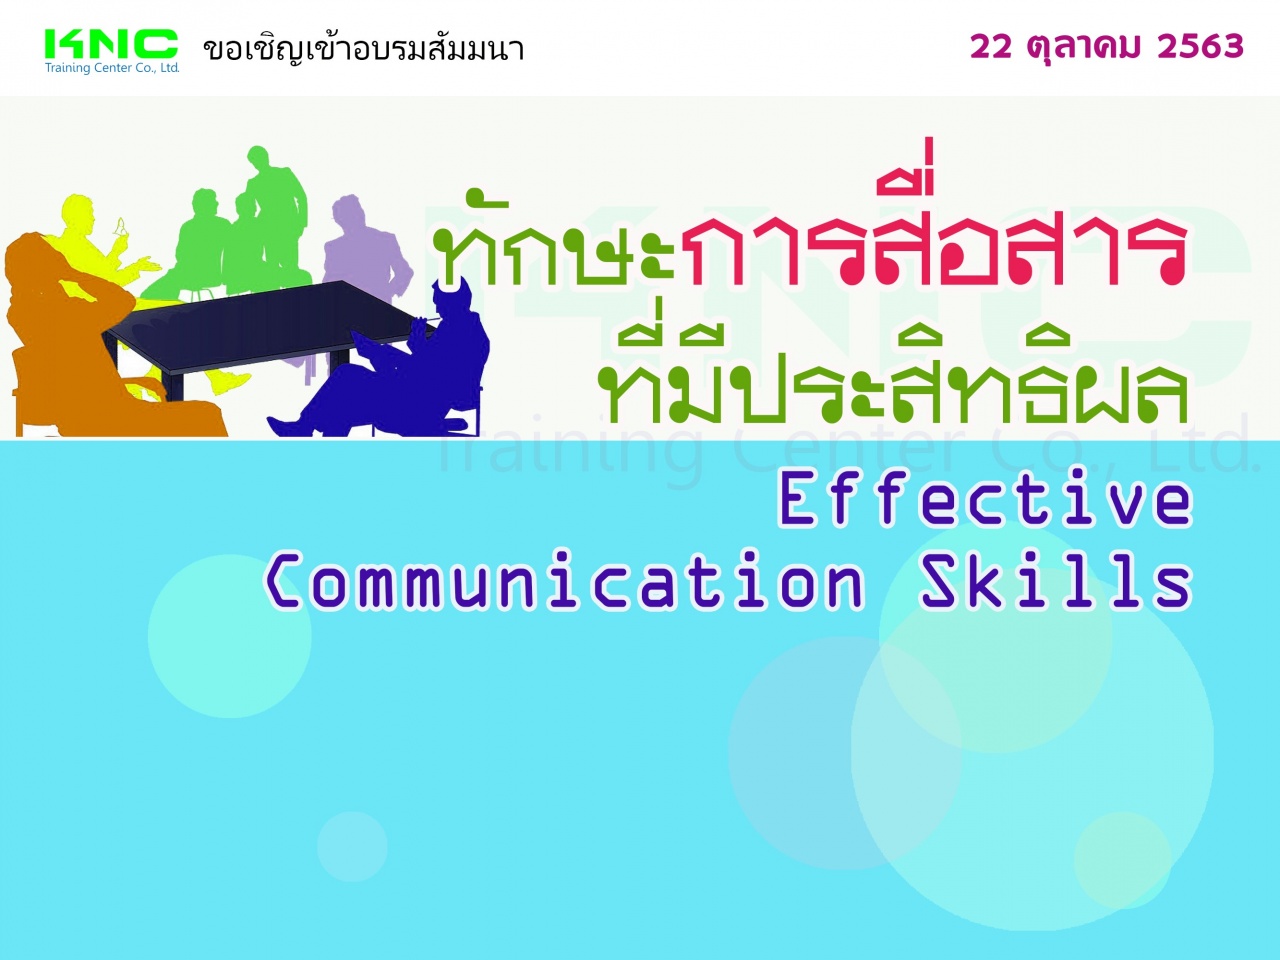 ทักษะการสื่อสารที่มีประสิทธิผล (Effective Communication Skills)